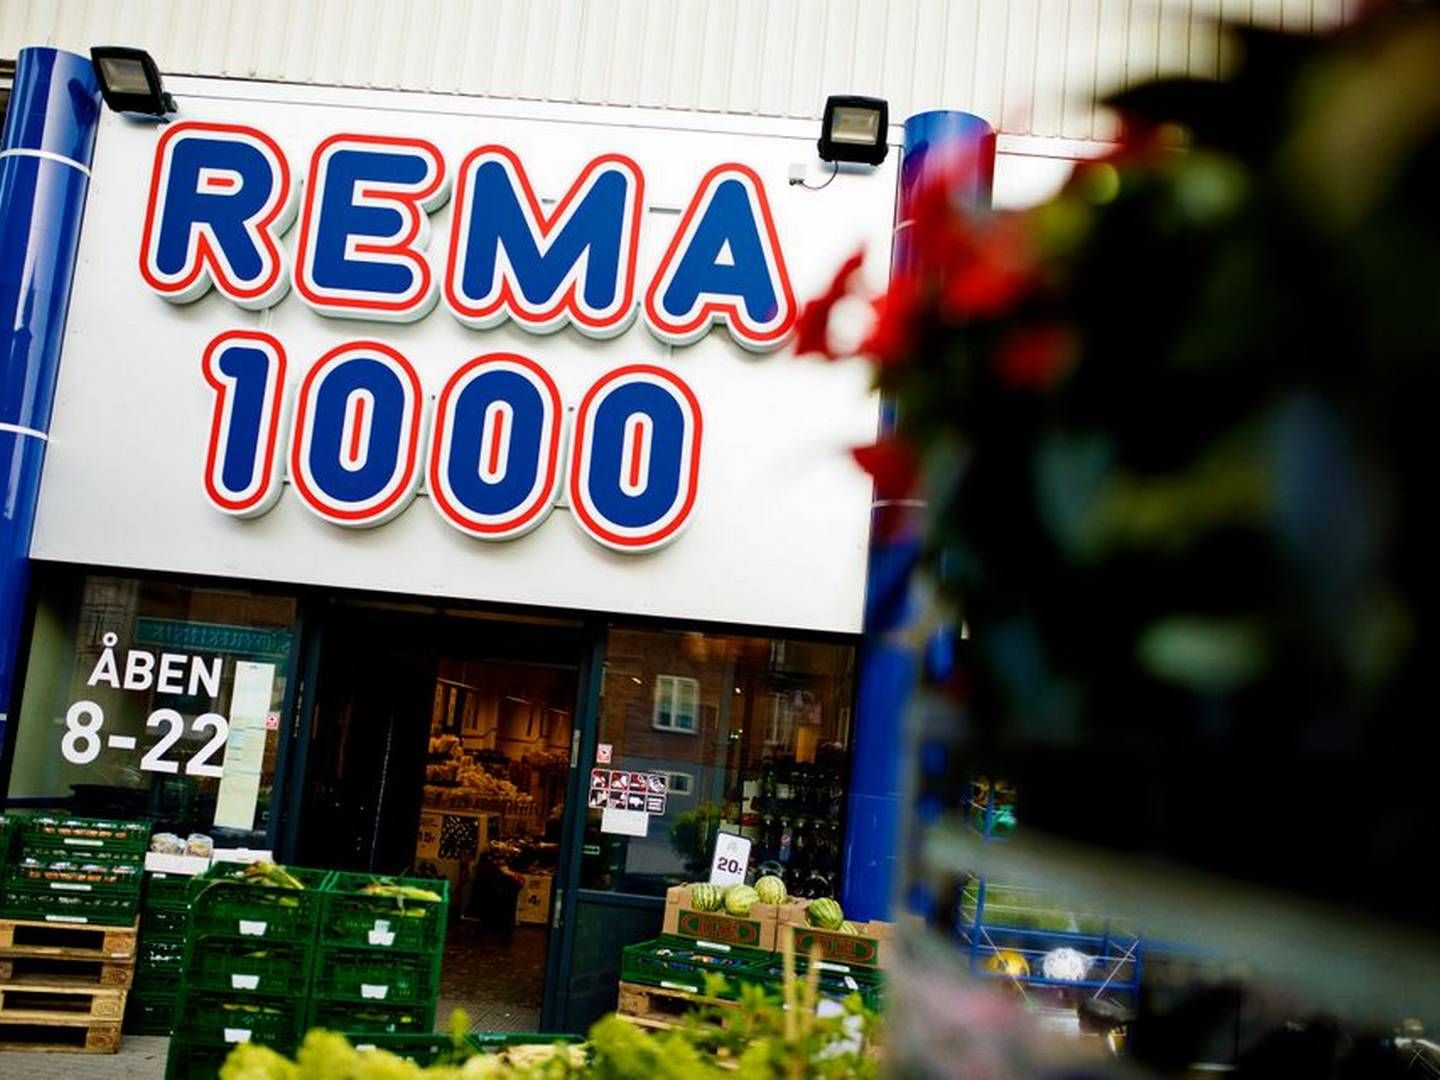 Rema 1000 er i gang med en historisk udvidelse på det danske marked efter opkøbet af Aldis aktiviteter. | Foto: Rema 1000/pr